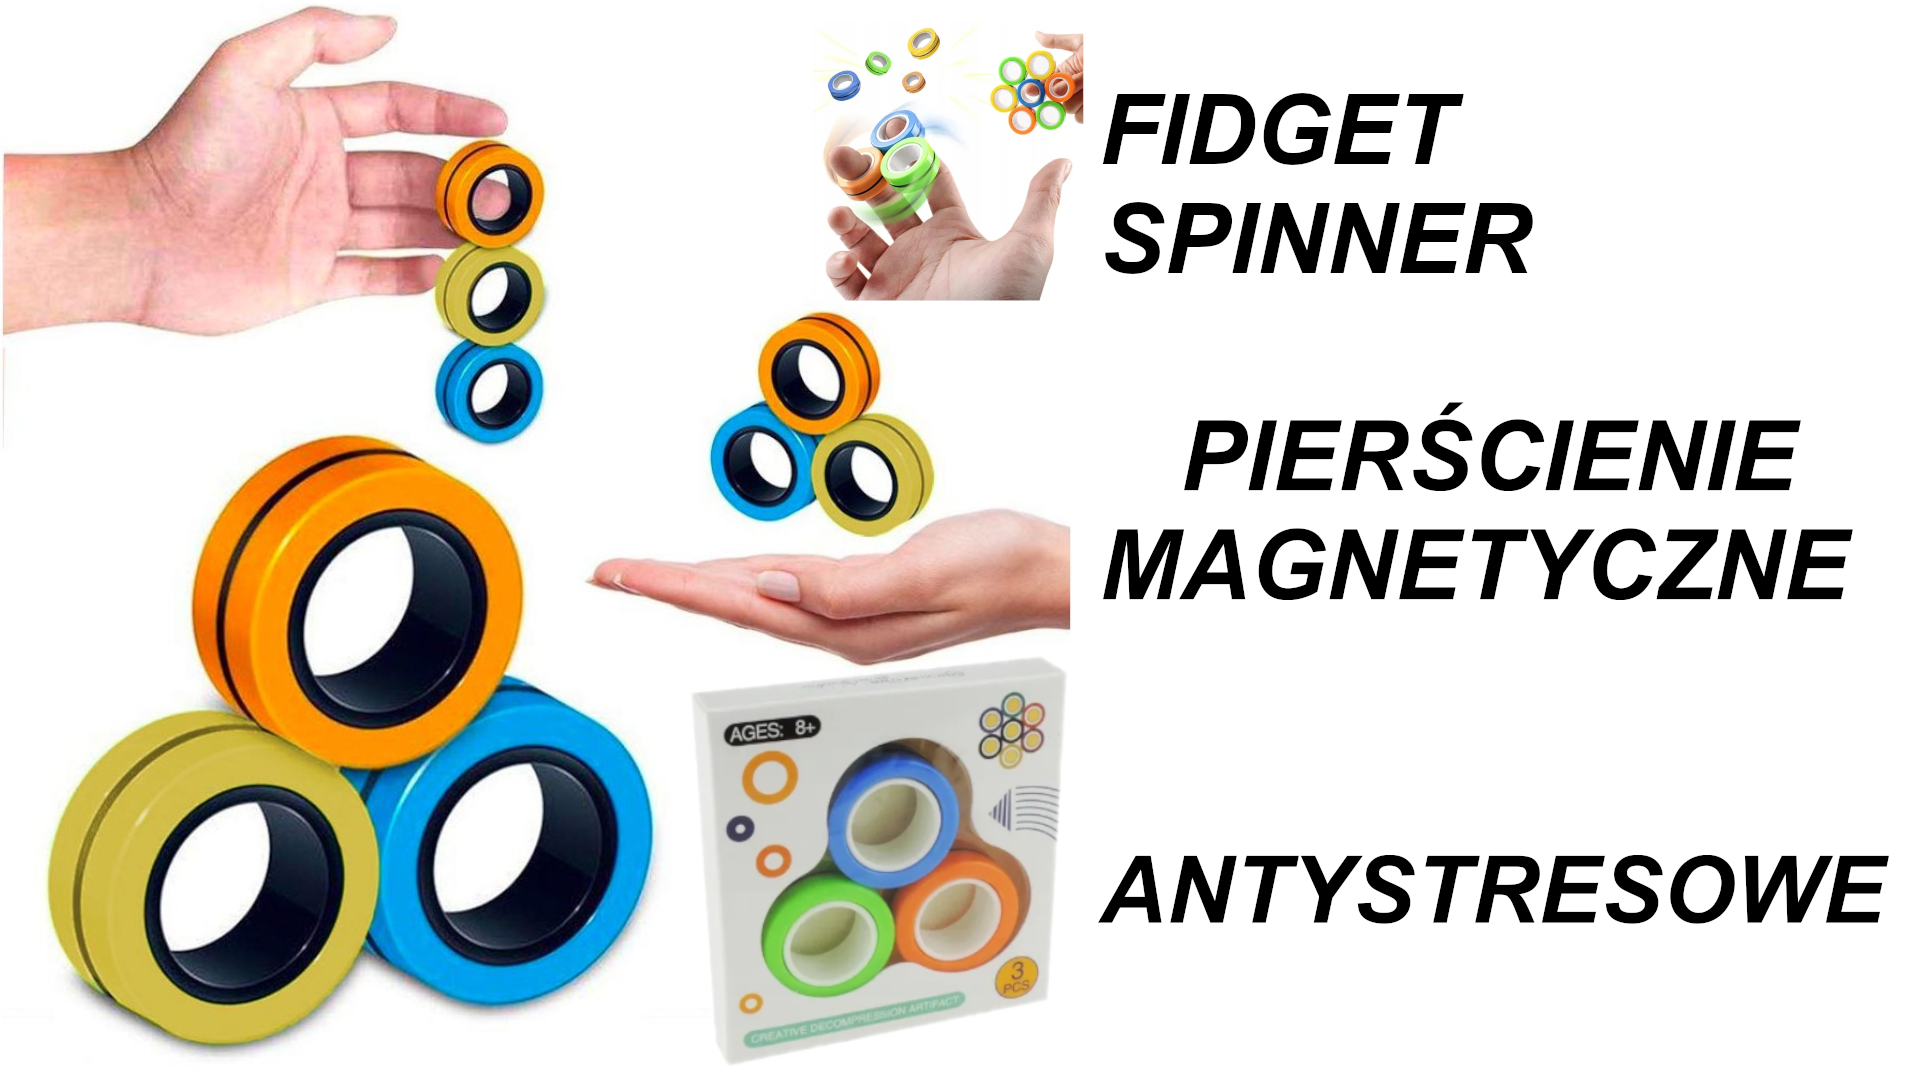 Fidget Spinner Magnetyczne Pierścienie Antystresowe Gra Zręcznościowa TOMDORIX